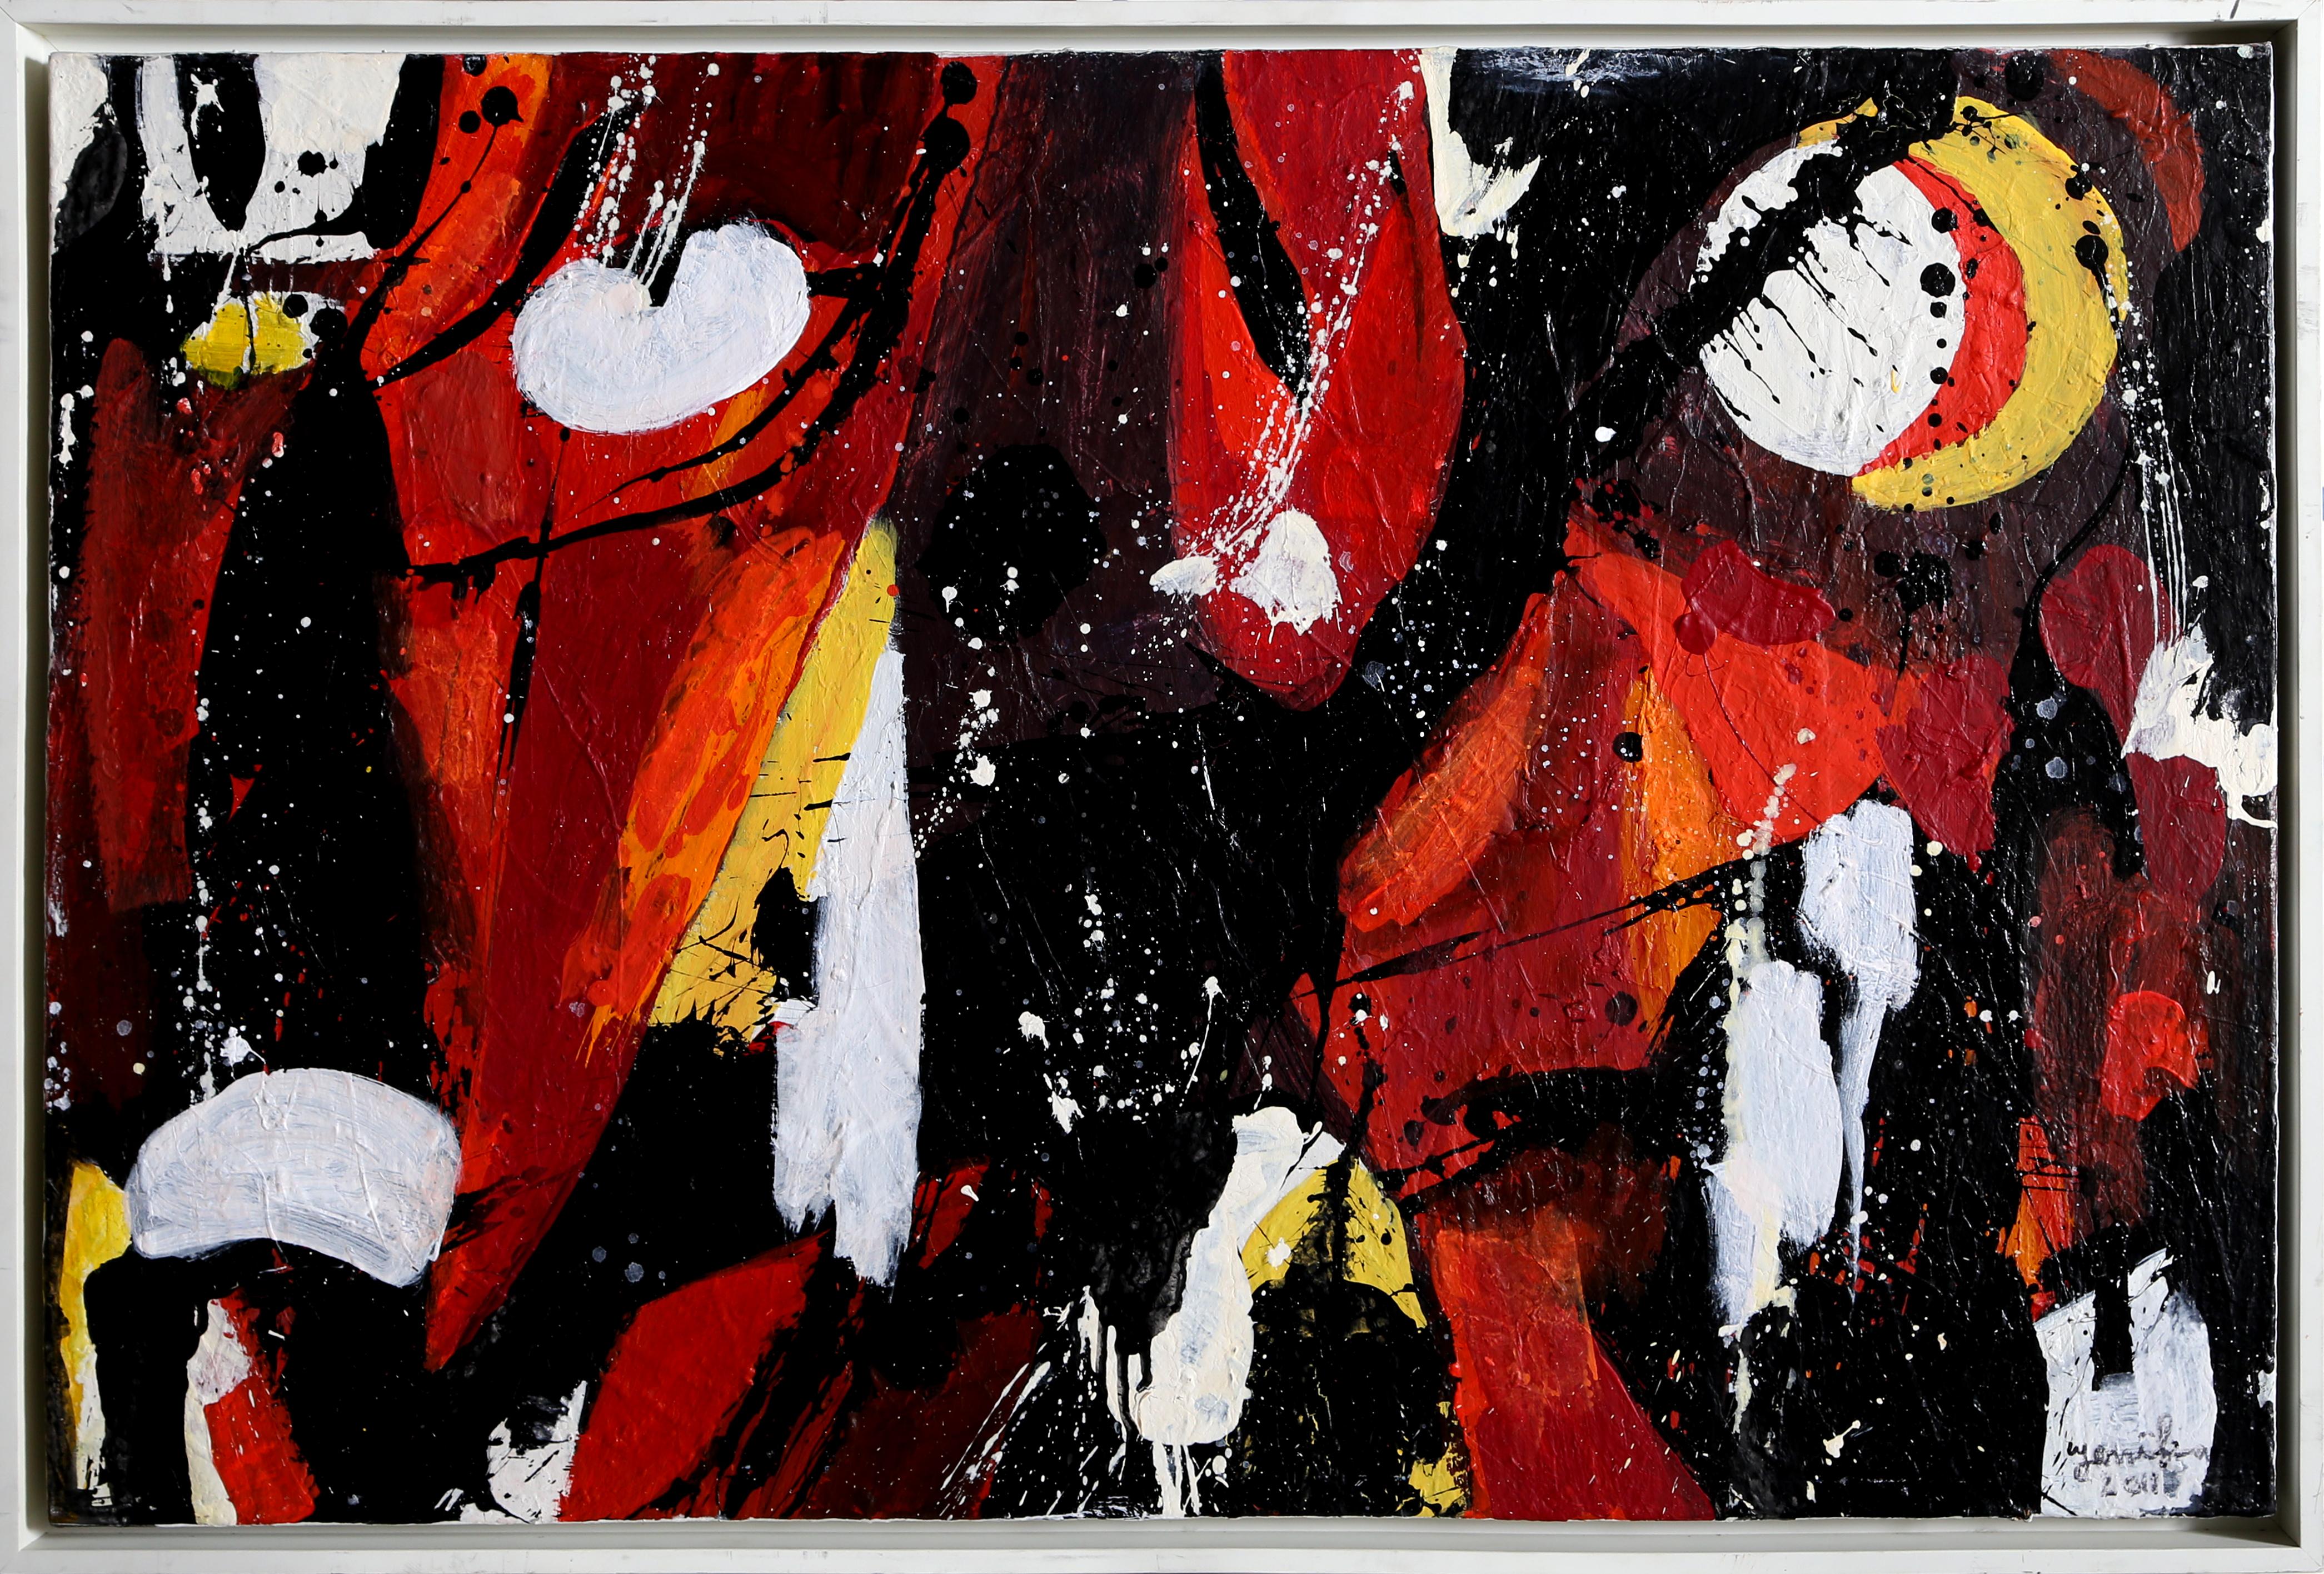 Artistics : Jenik Cook, Américain (1940 - )
Titre : Composition abstraite II
Année : 2011
Moyen d'expression : Huile sur toile, signée et datée à gauche et au verso
Taille : 24 x 36 in. (60.96 x 91.44 cm)